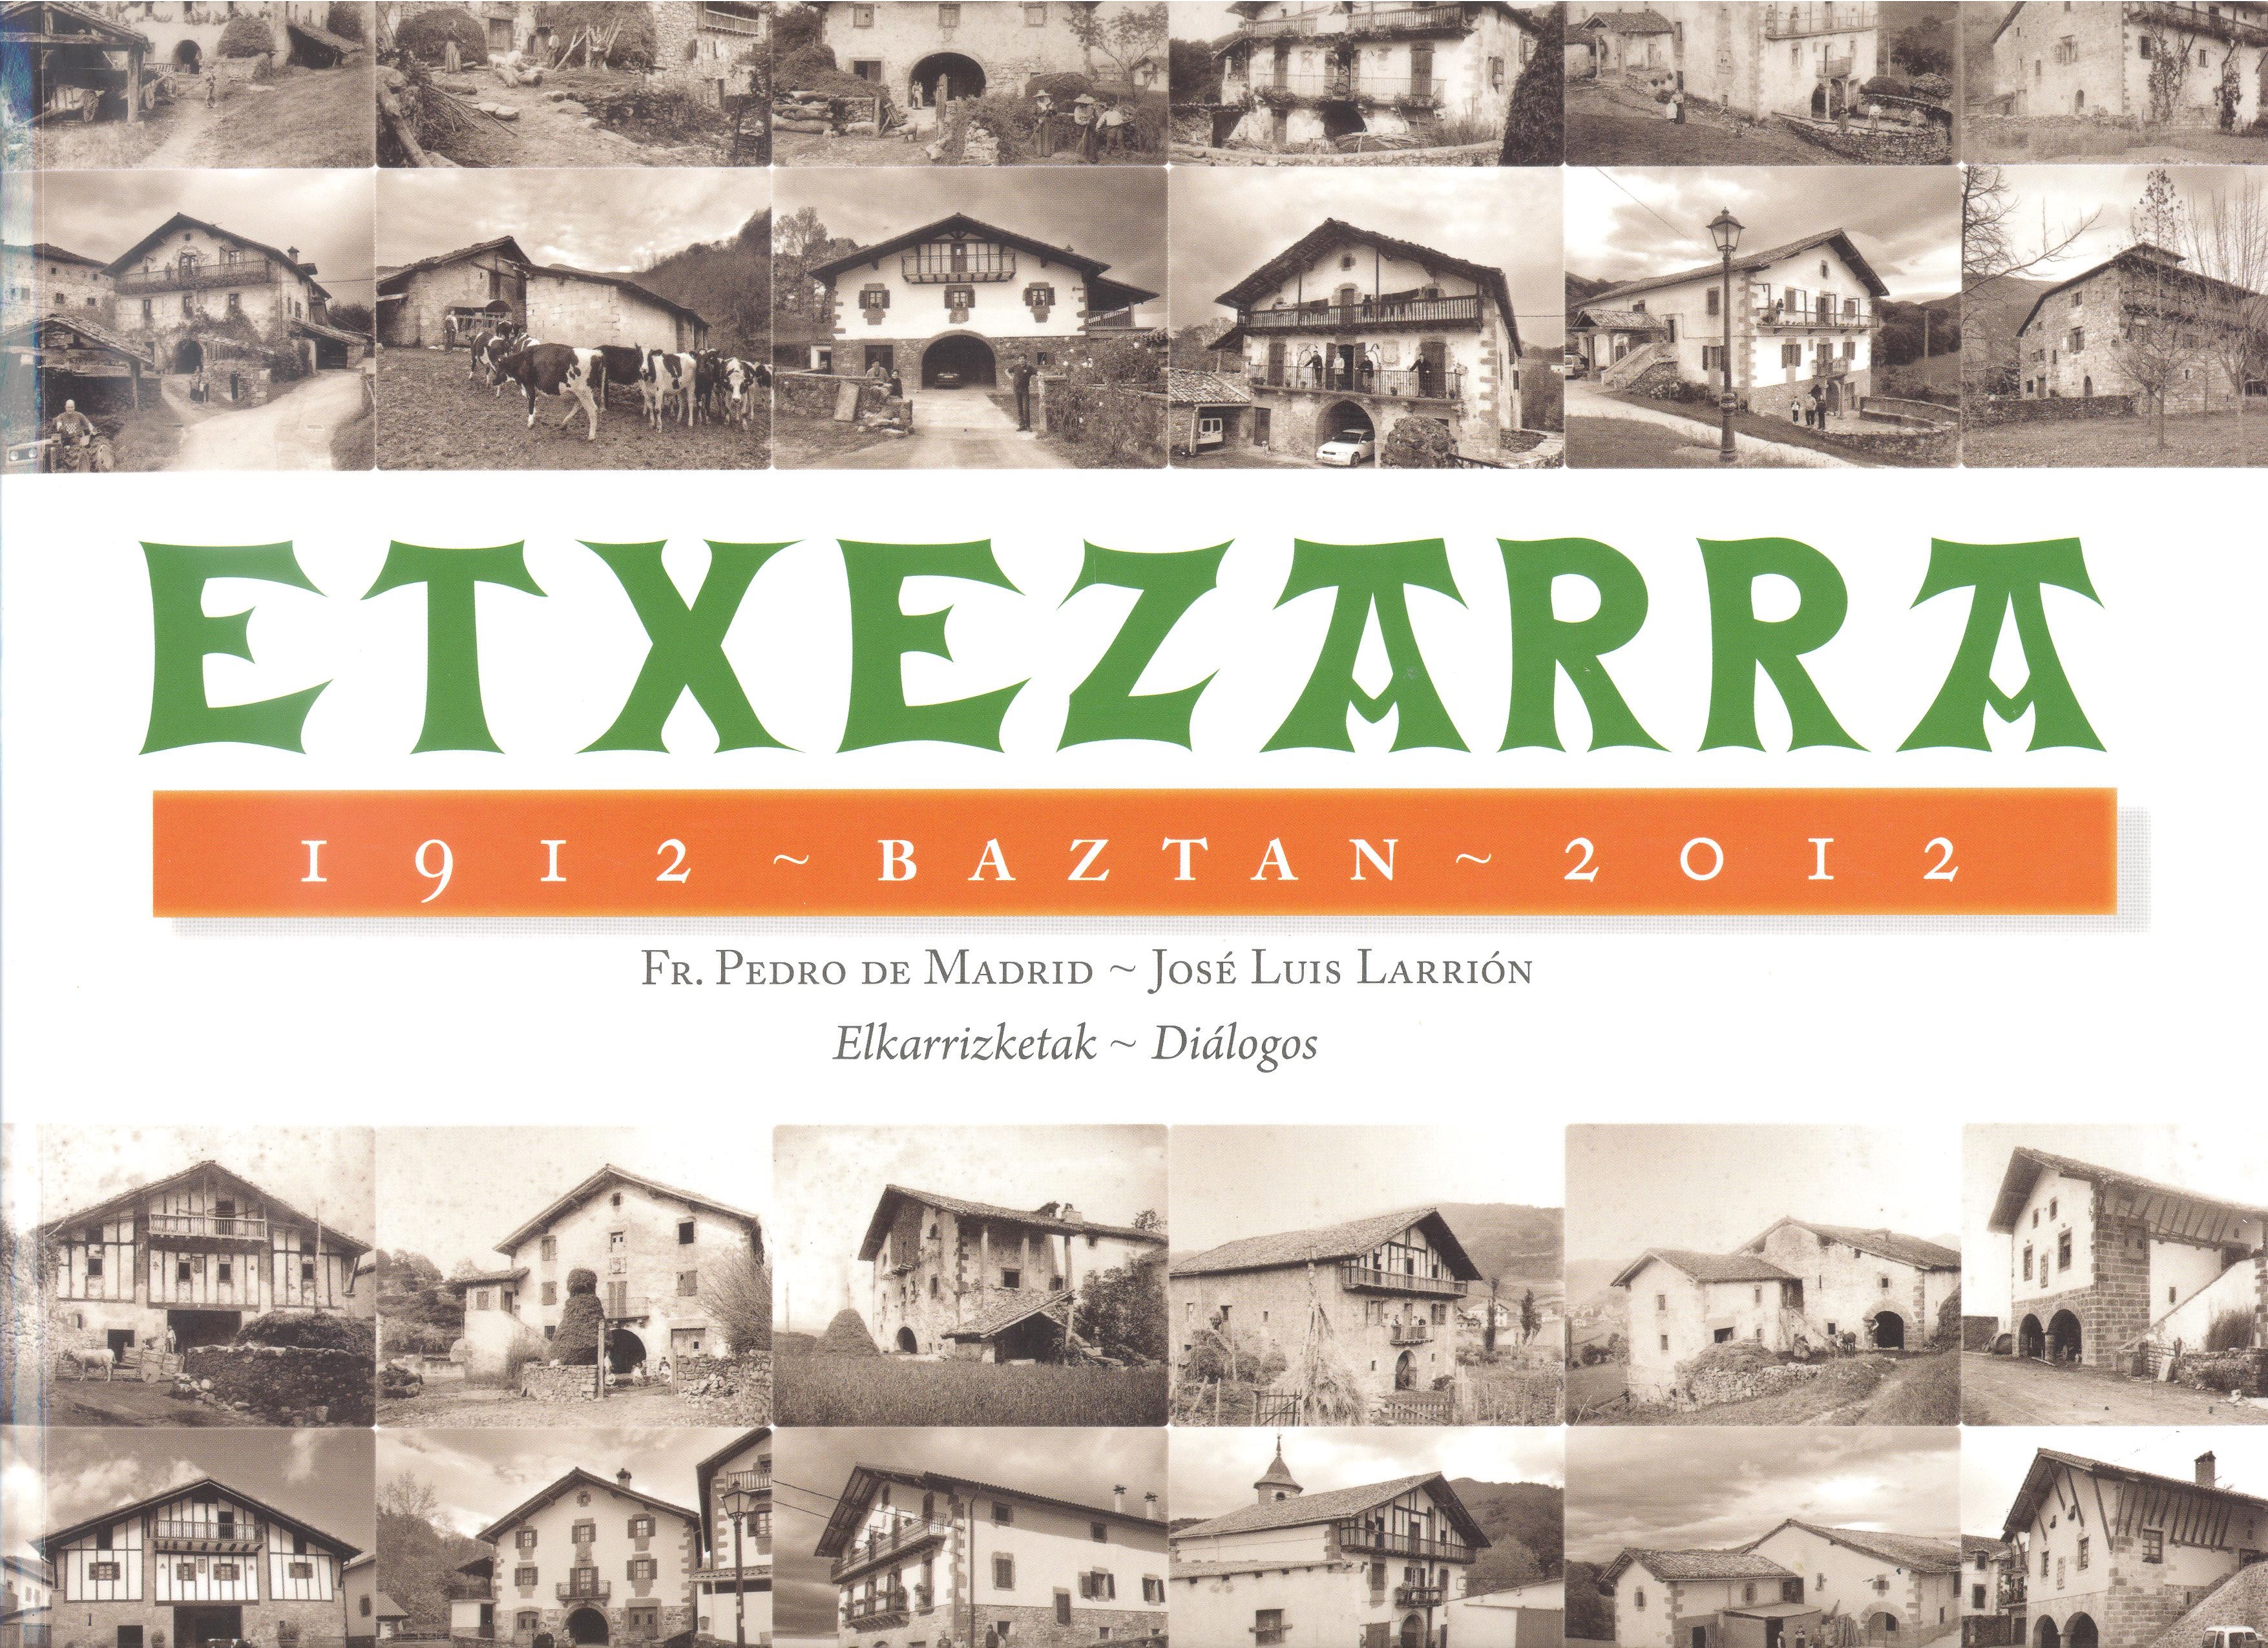 Etxezarra. 1912 - Baztan - 2012